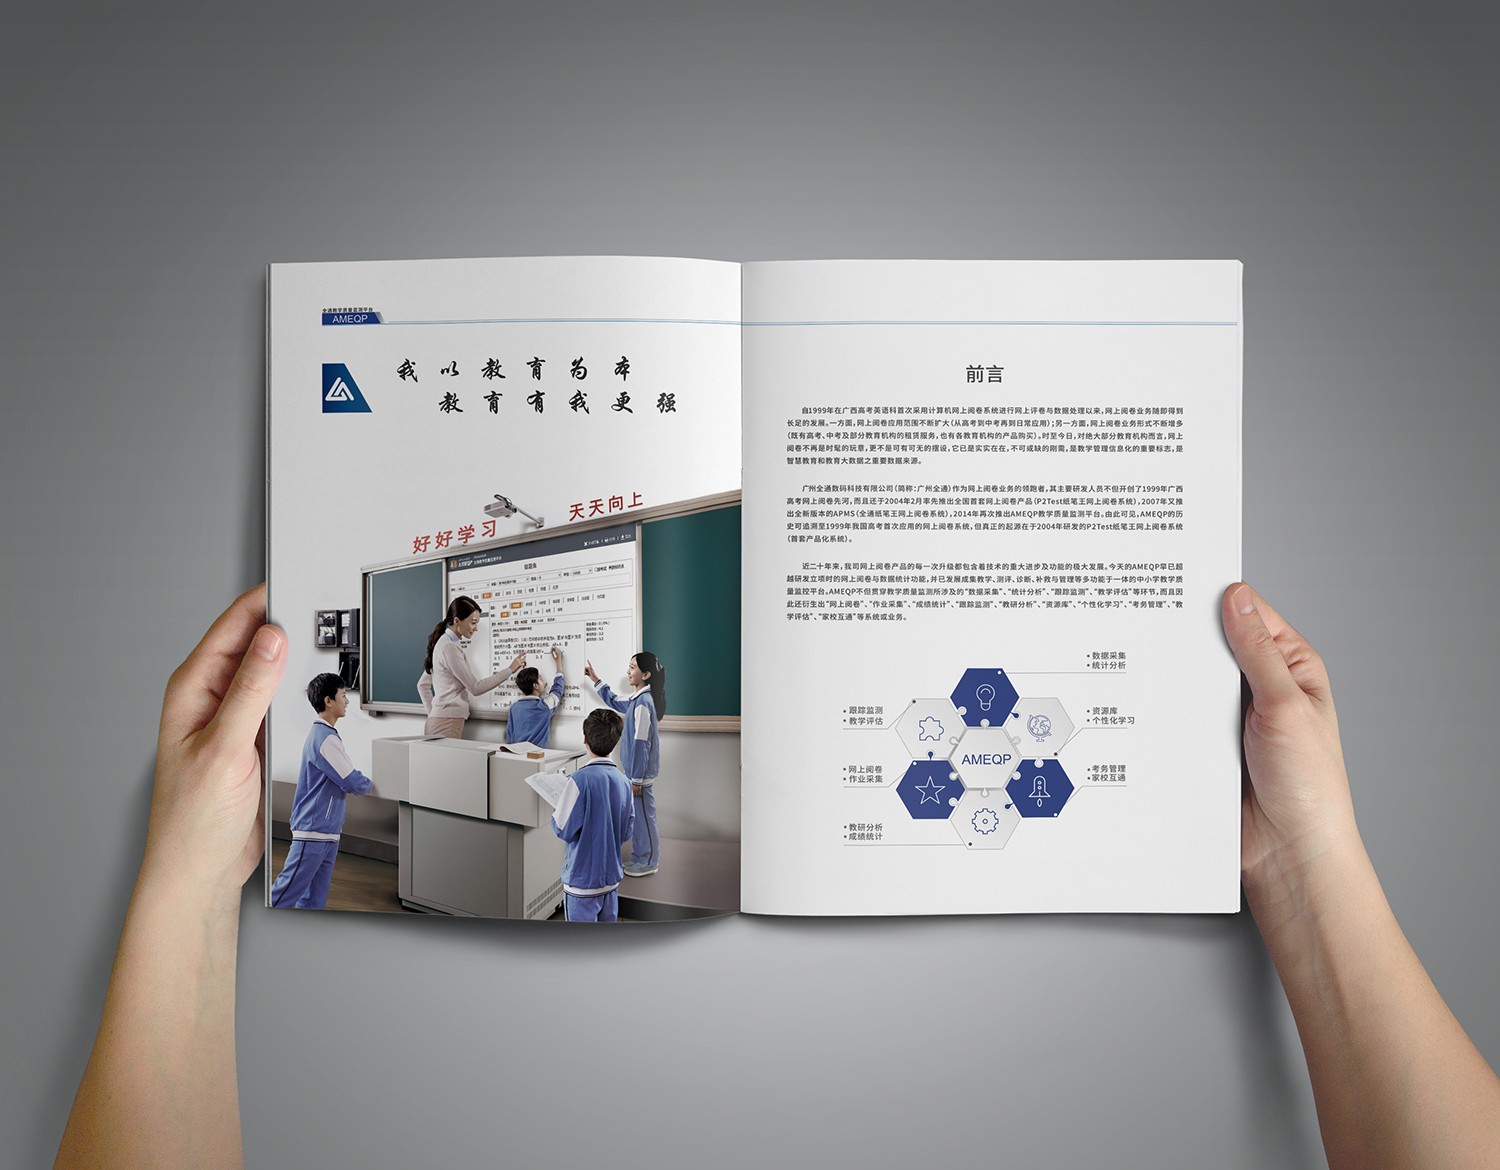 广州教育画册案例欣赏,教育IT产品画册设计版式,教育培训产品画册设计样式